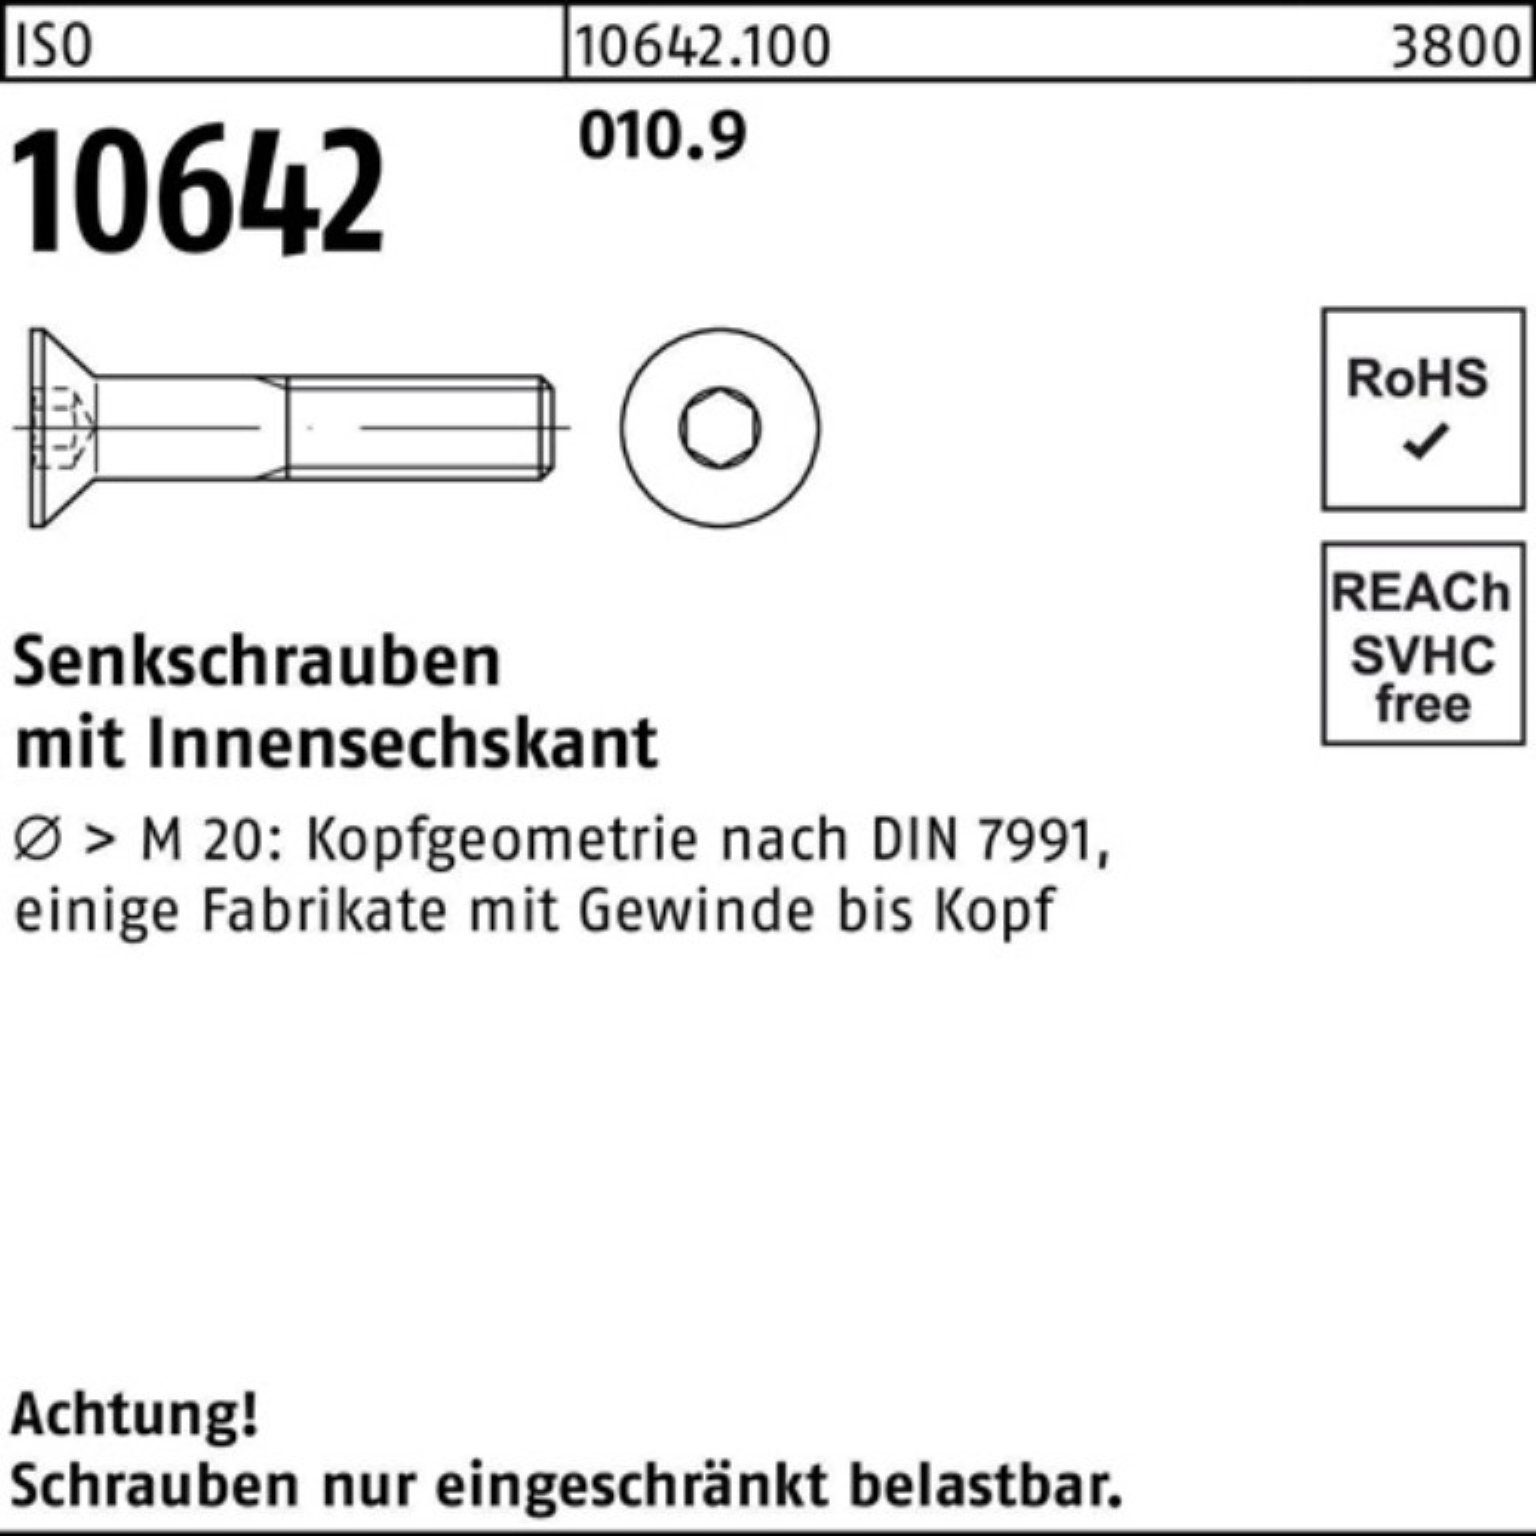 Senkschraube Reyher Stück ISO 90 010.9 IS 10642 Pack Senkschraube M20x 100er 25 Innen-6kt